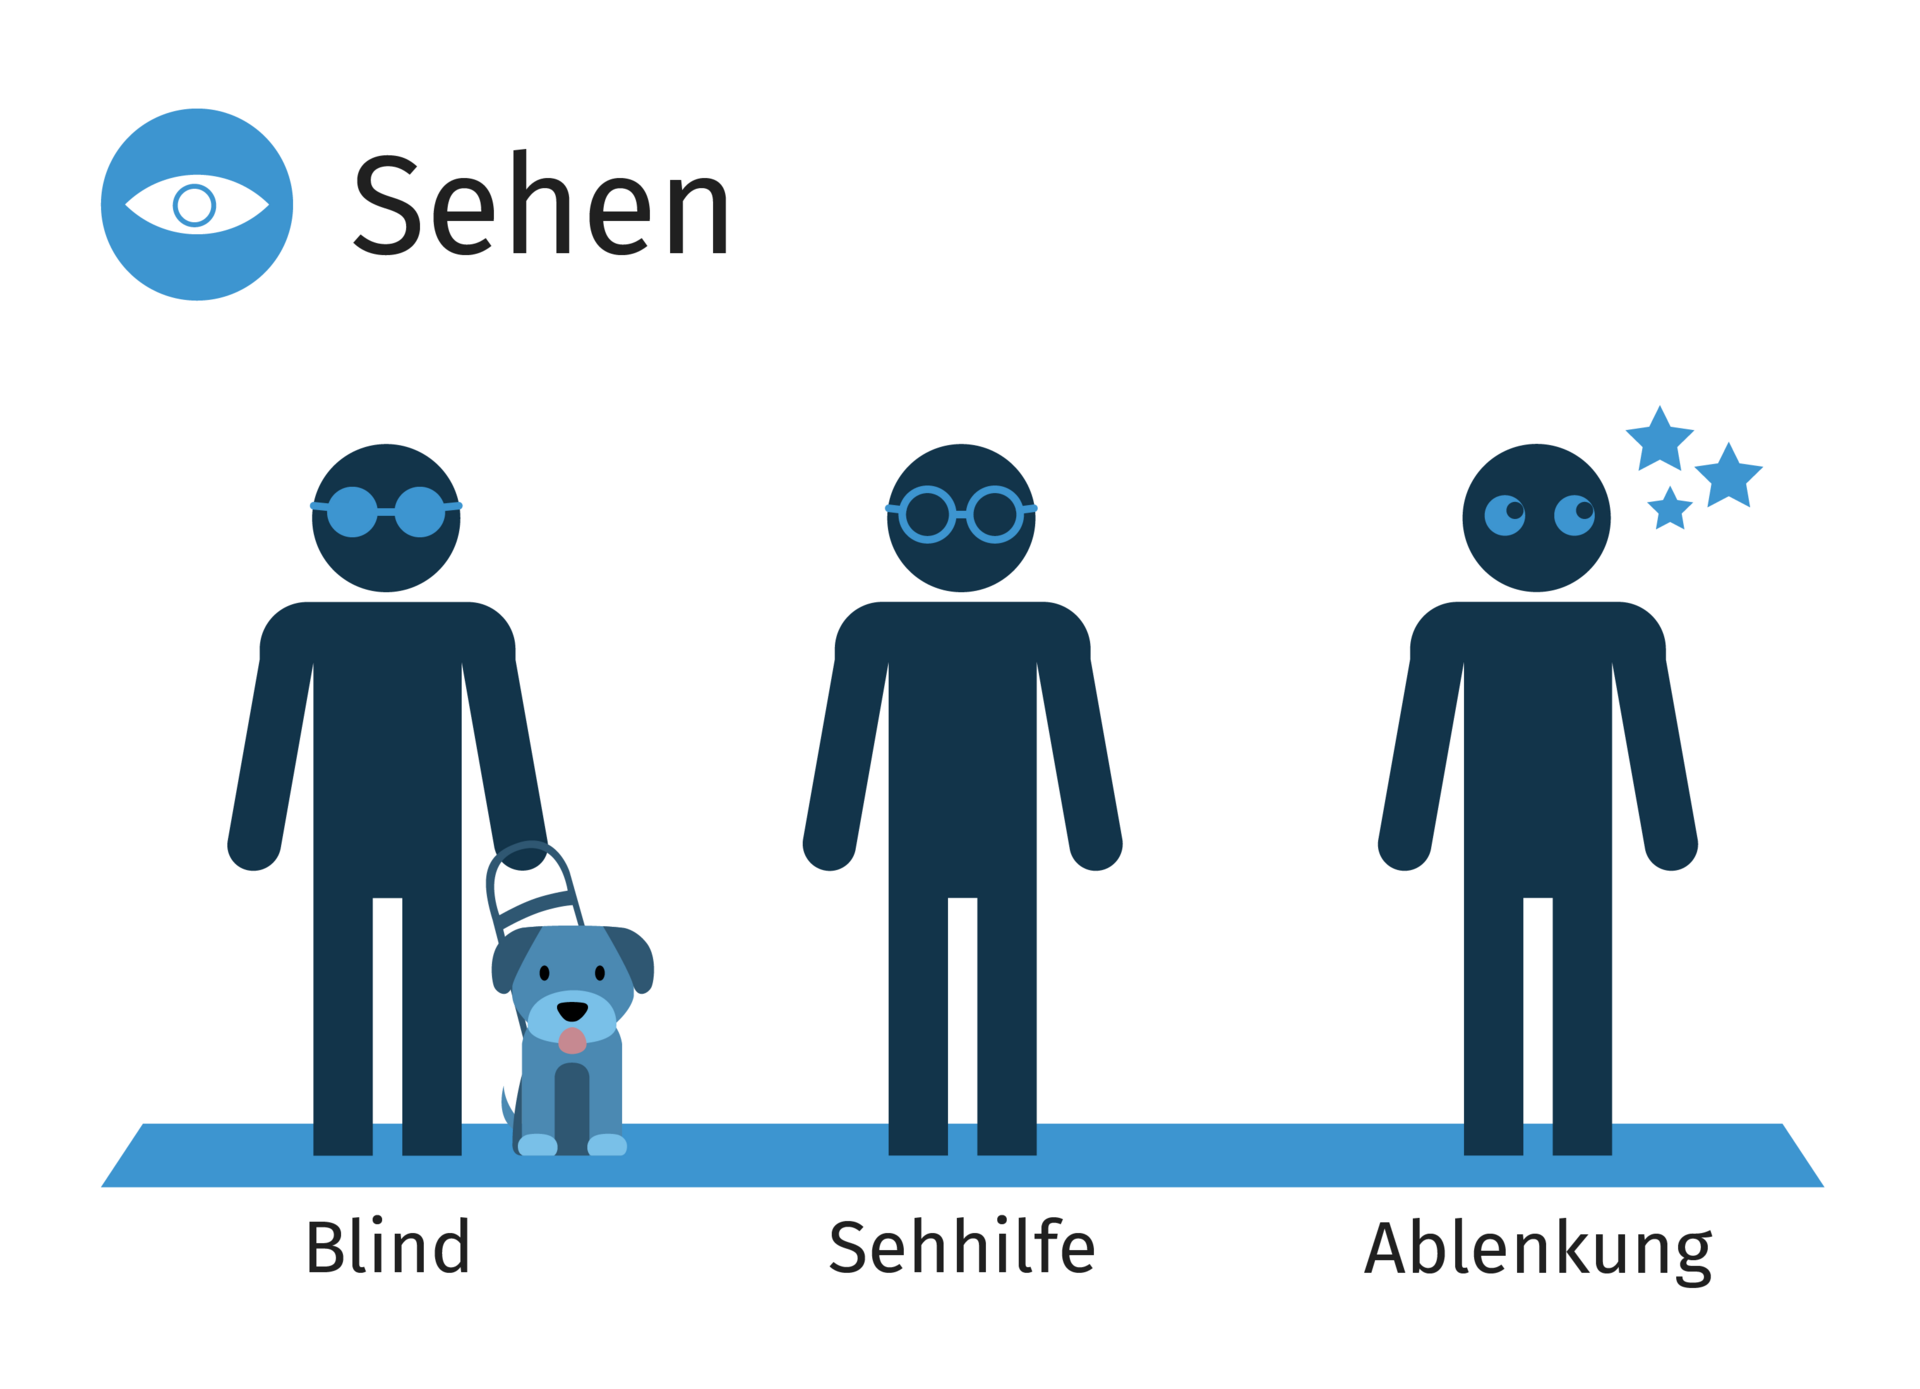 Darstellung von drei Personen, bei denen im Bereich 'Sehen' jeweils eine Einschränkung durch Blindheit, Sehbehinderung oder Ablenkung symbolisiert wird.